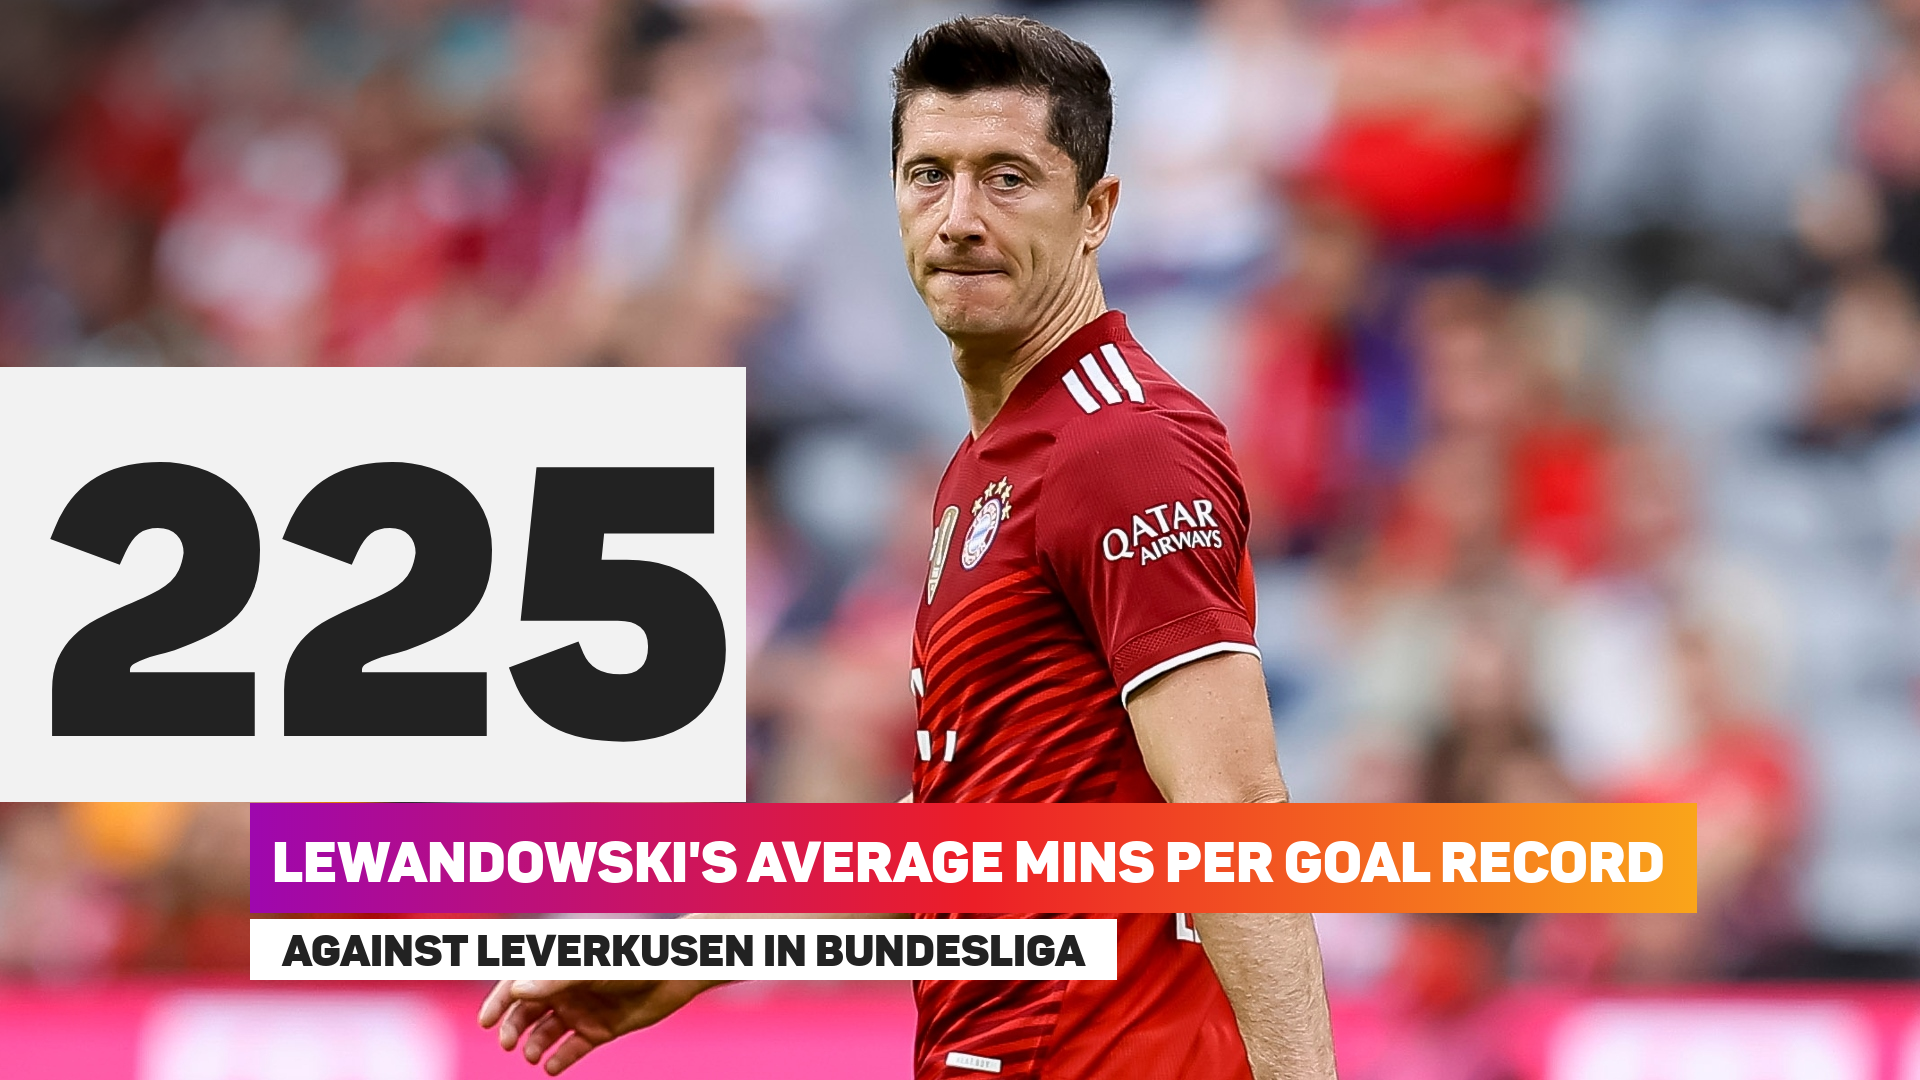 Lewandowski averages a goal every 225 minutes against Leverkusen